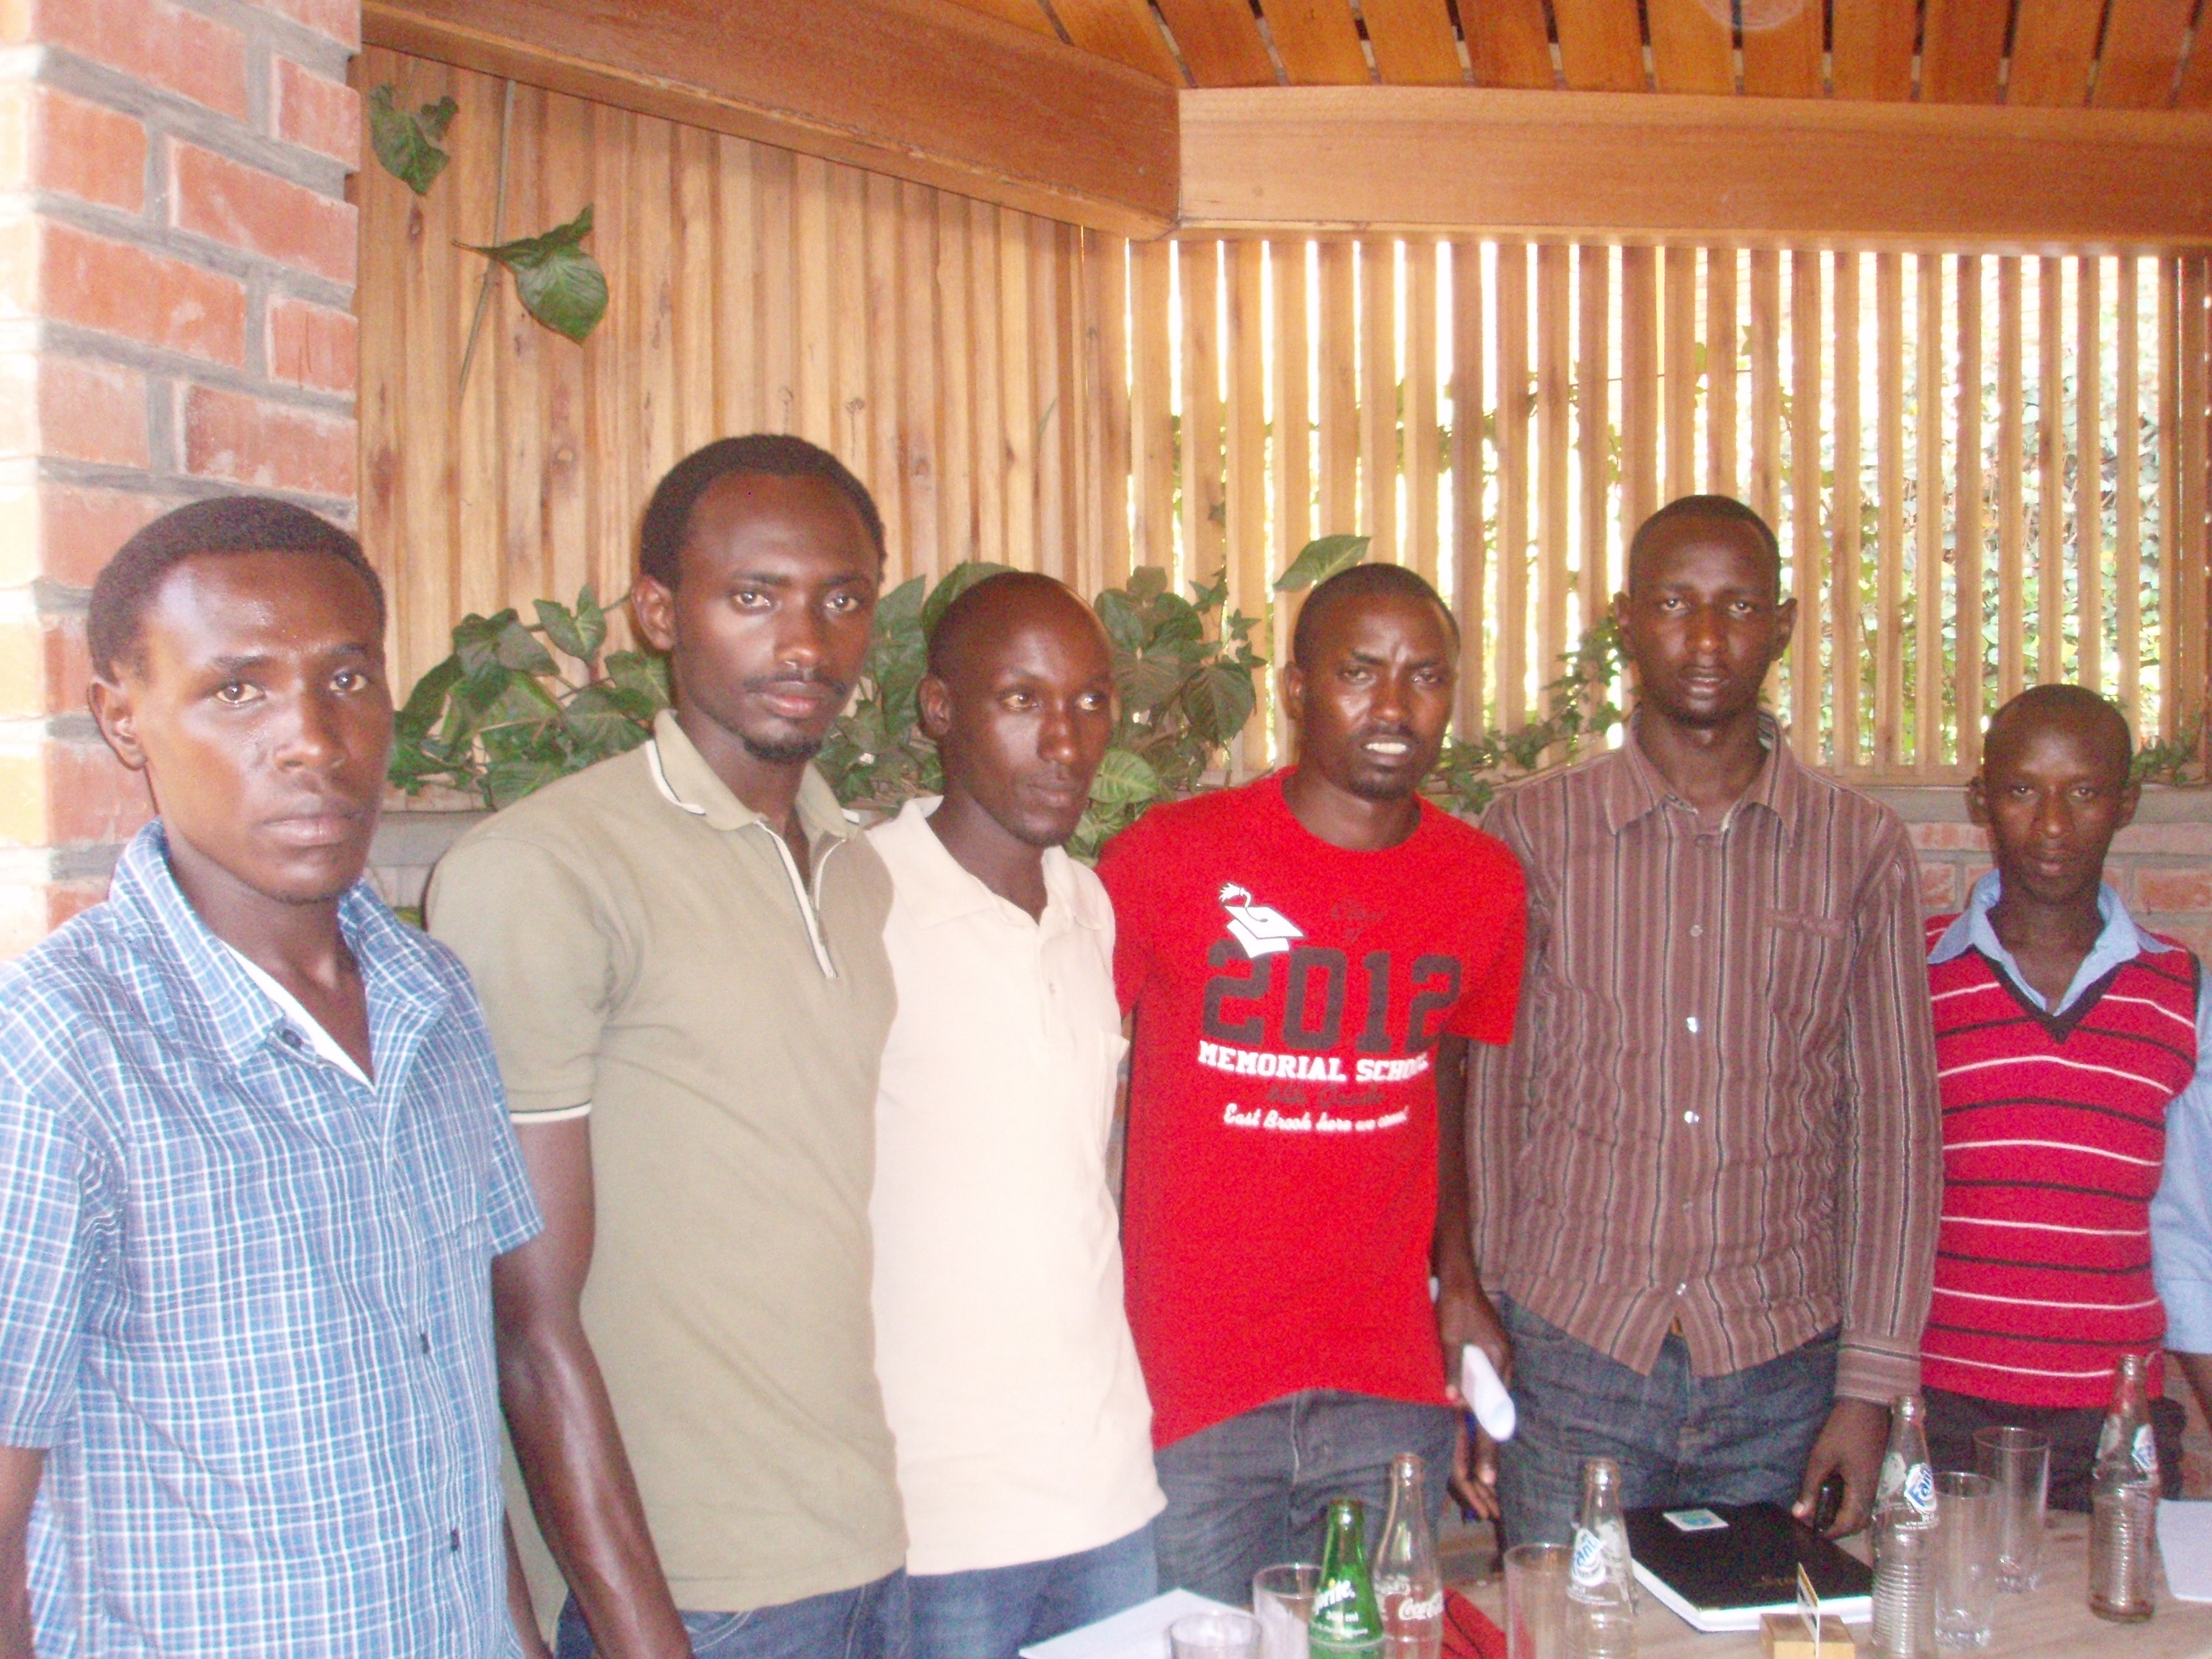 Etudiants rescapés de Bisesero à Kigali le 10 juillet 2013